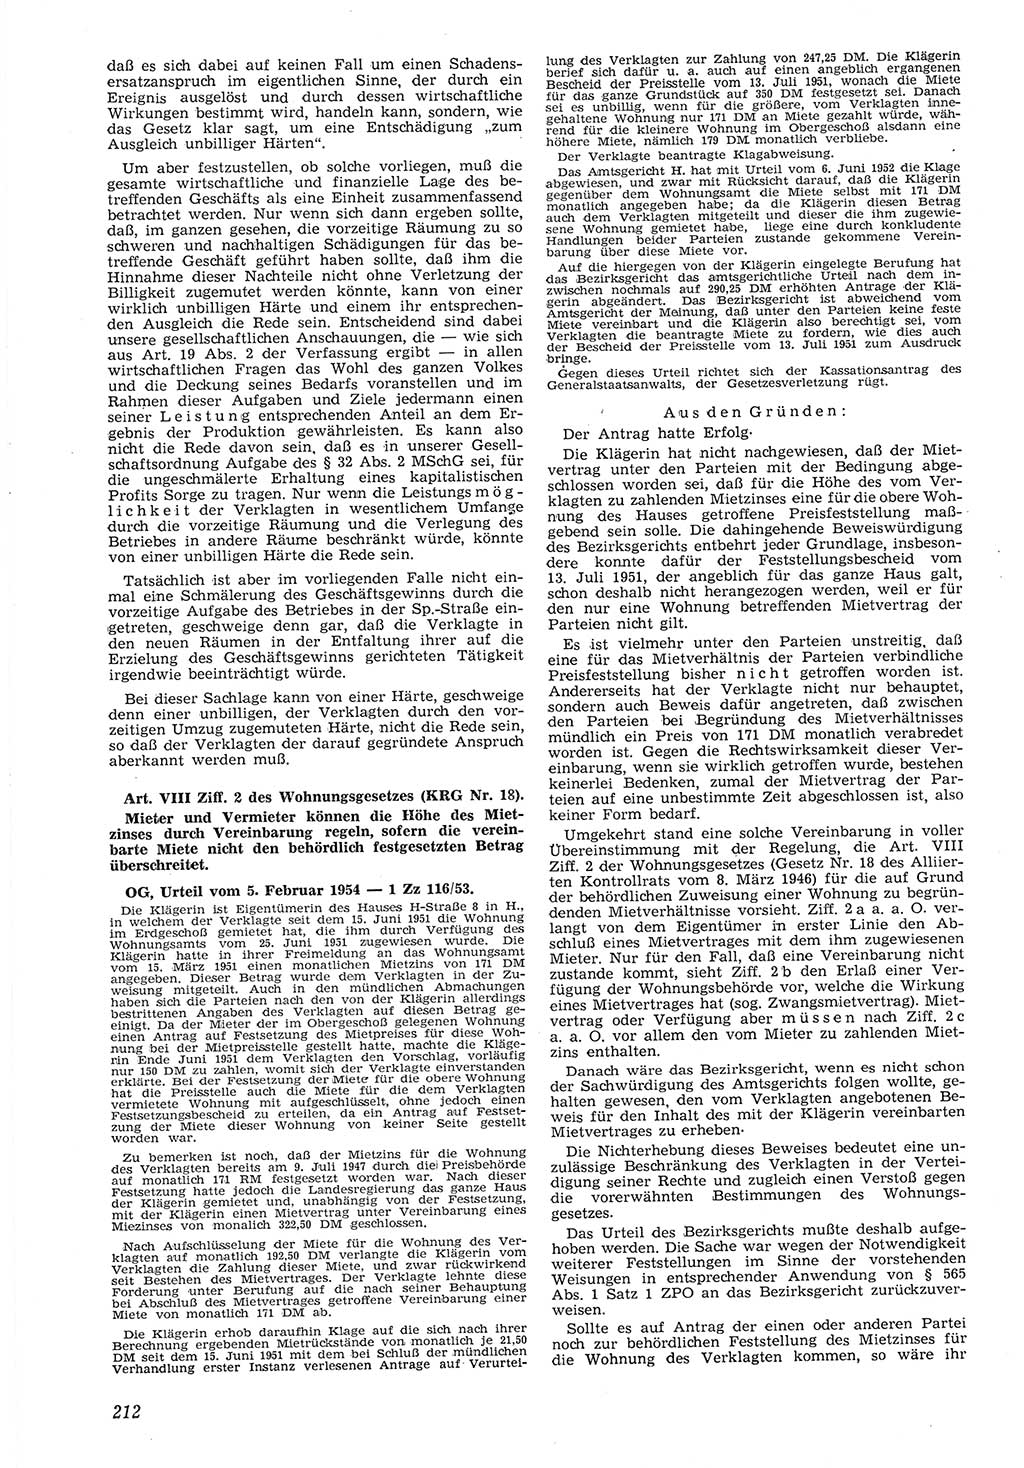 Neue Justiz (NJ), Zeitschrift für Recht und Rechtswissenschaft [Deutsche Demokratische Republik (DDR)], 8. Jahrgang 1954, Seite 212 (NJ DDR 1954, S. 212)